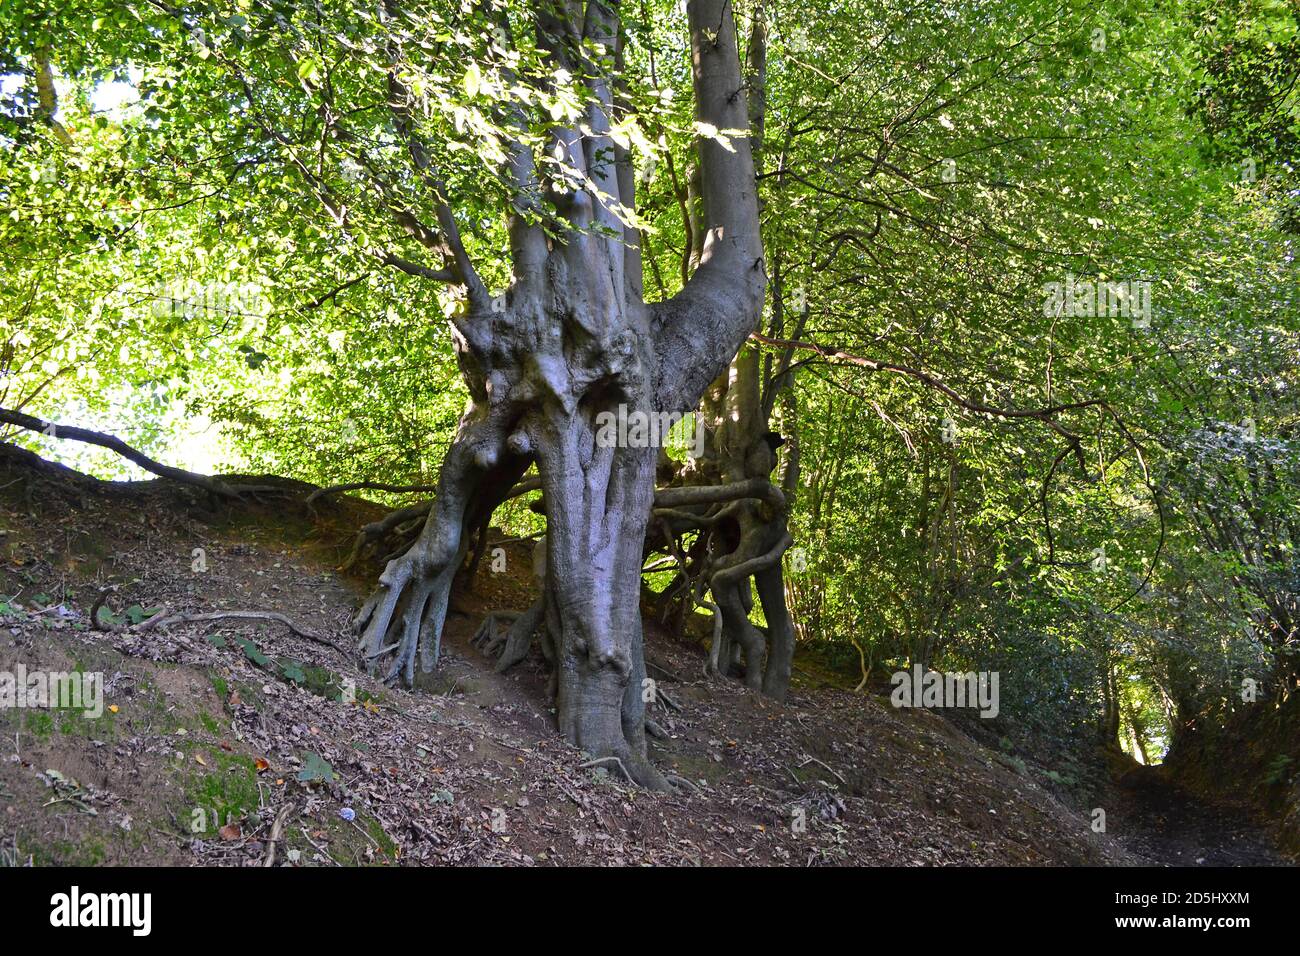 Incredibili alberi di faggio che crescono su una collina in pietra arenaria, Greensand Ridge, Sevenoaks. Bizzarri alberi sembrano vivi - come il Signore degli anelli 'Ents Foto Stock